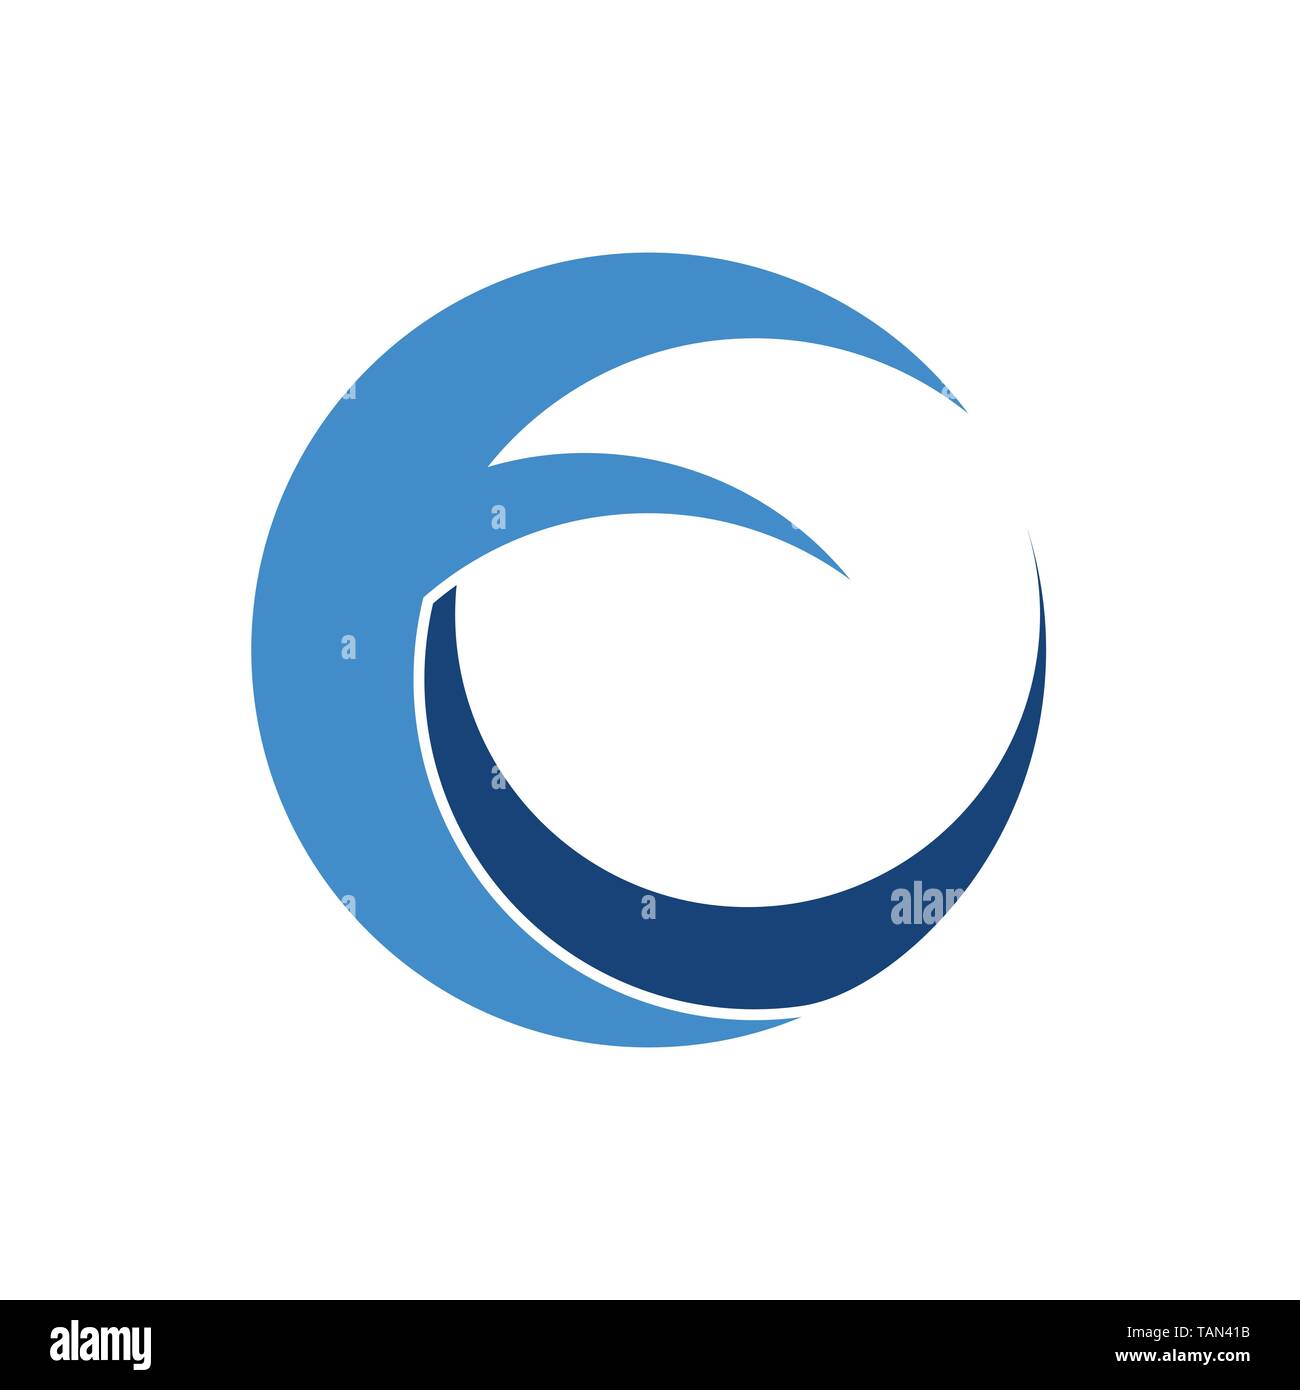 Sea Wave Circular Abstract Circular Vector Symbol Graphic Logo Design Template Stock Vector